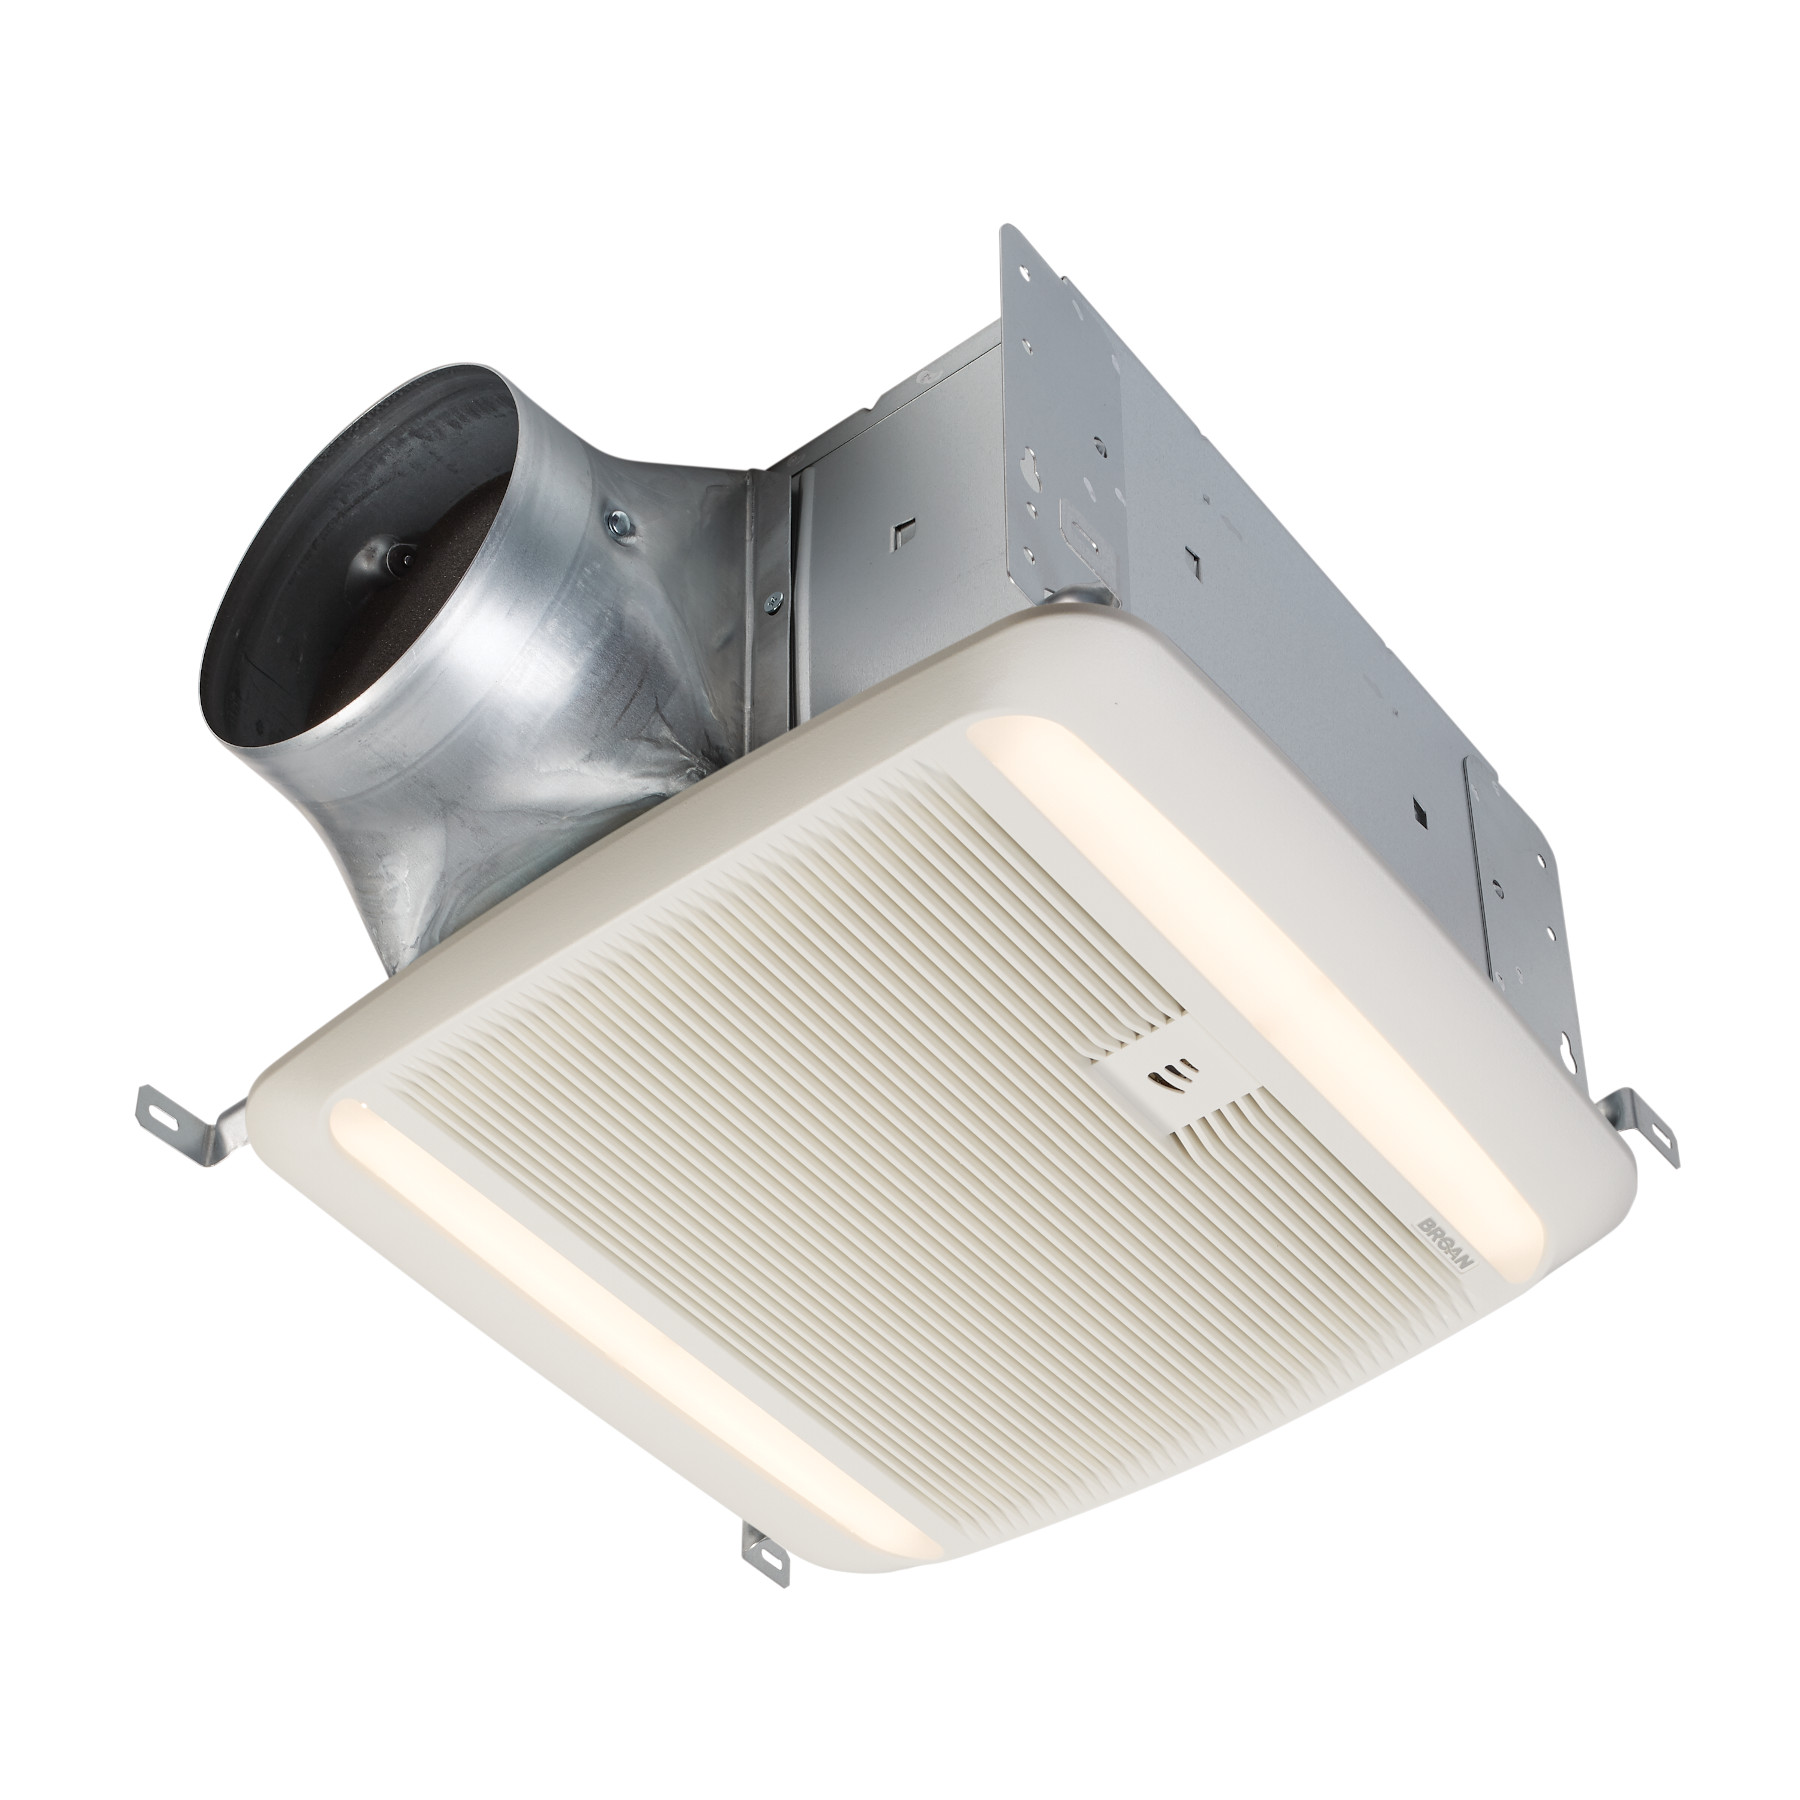 EN FIN DE SÉRIE: Broan® Ventilateur avec luminaire à détection d'humidité et débit réglable